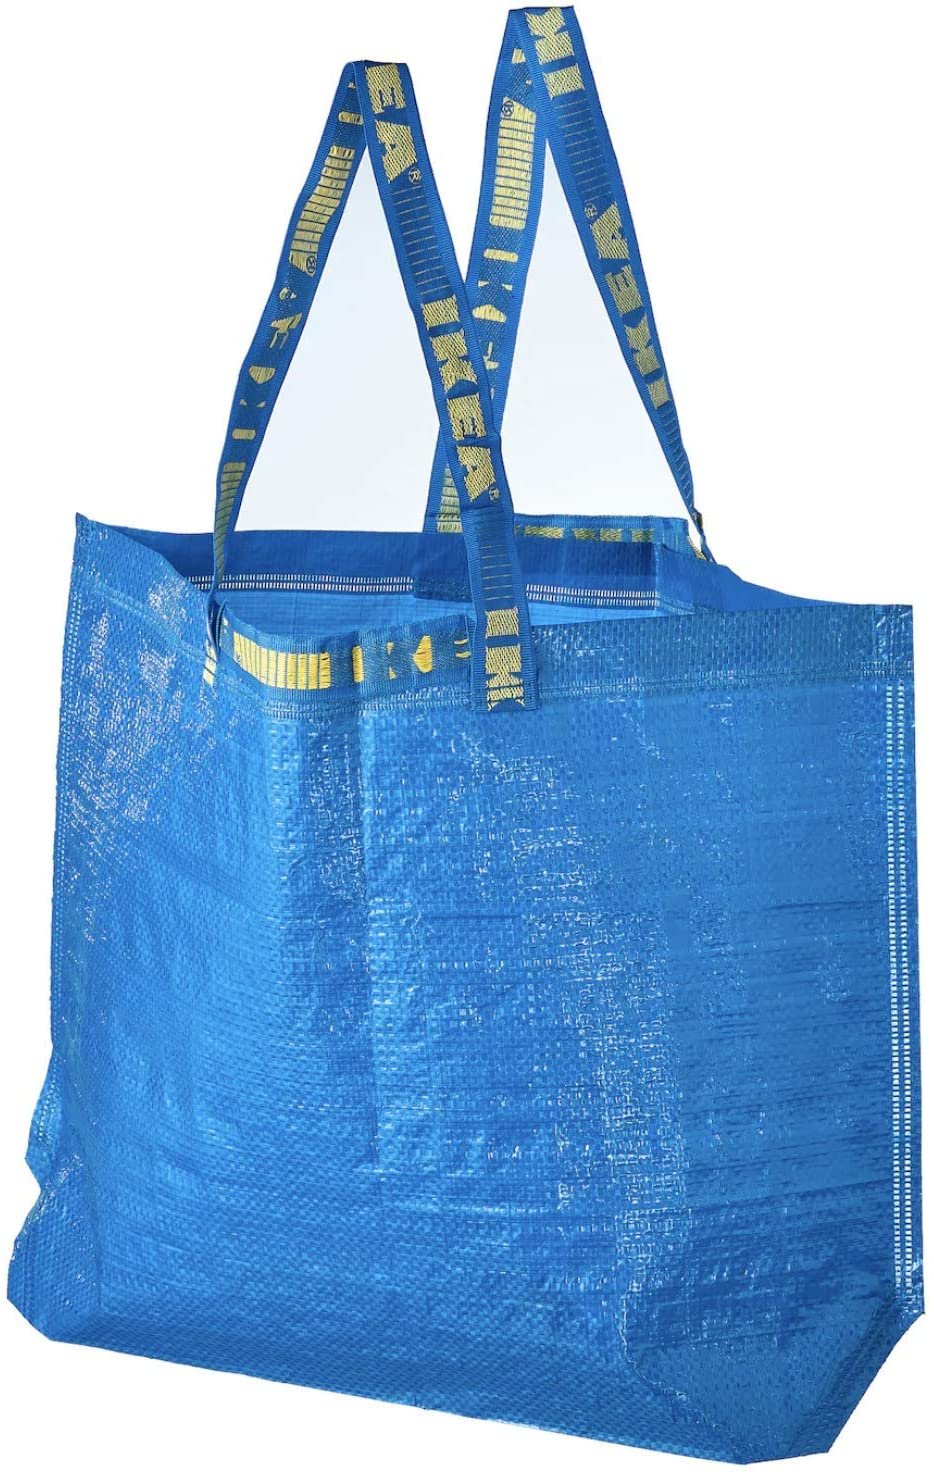 IKEA Frakta Medium Shopping Bags 4 Pack 10 Gal Blue Tote Multi Purpose Durable Material